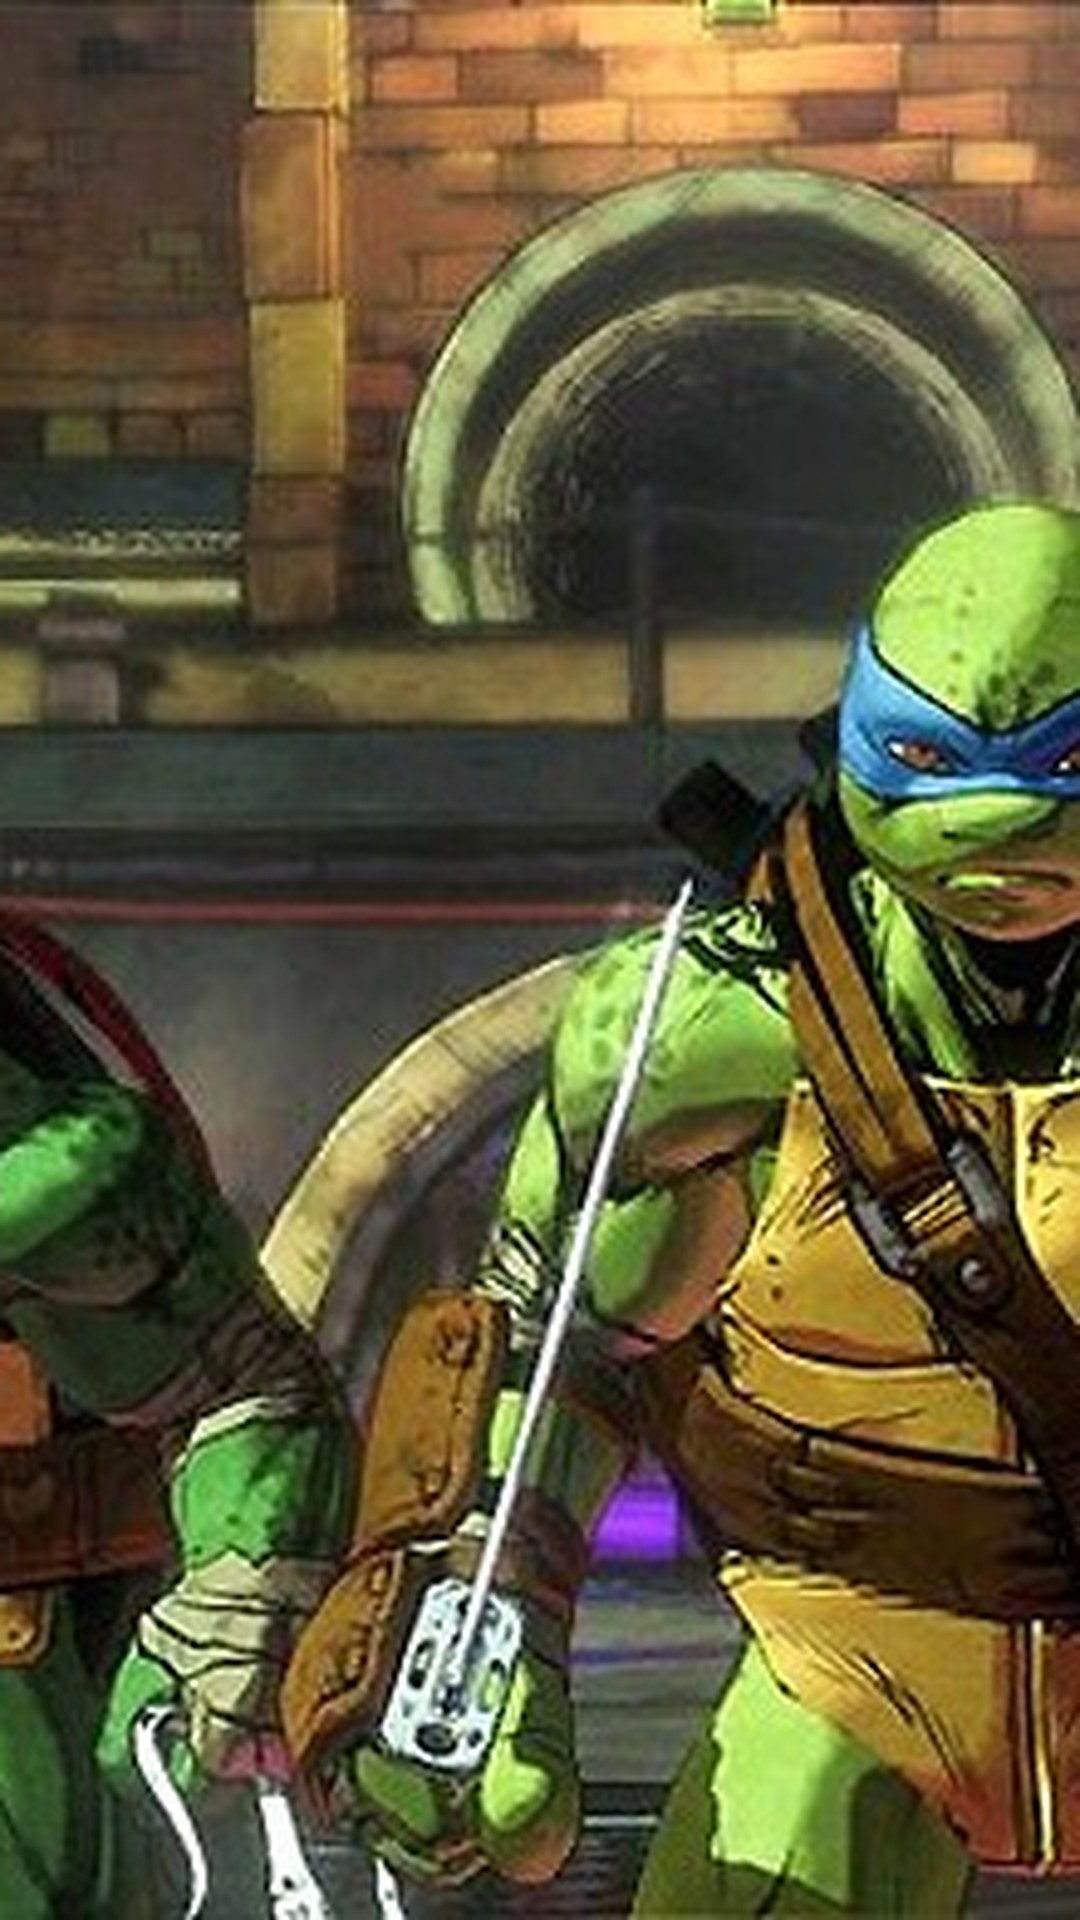 Novo jogo das Tartarugas Ninjas conta com coop online para 4 jogadores